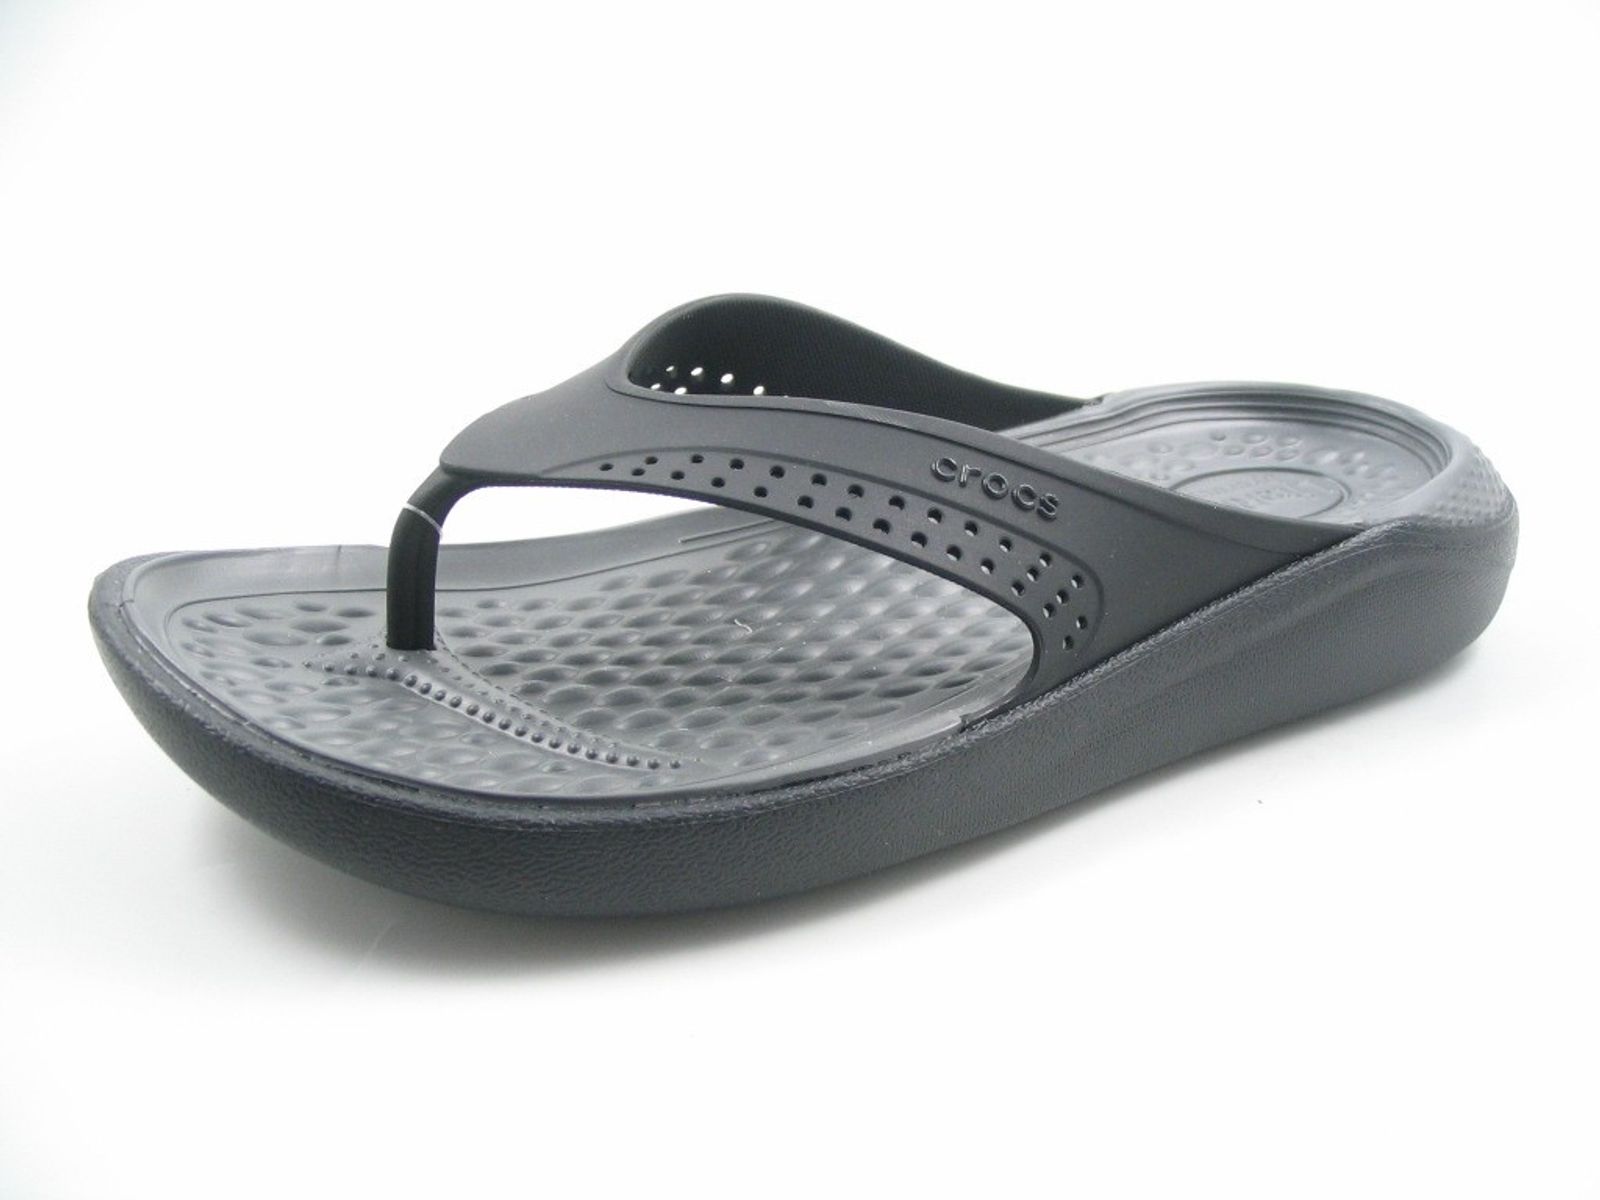 Schuh von Crocs, 46